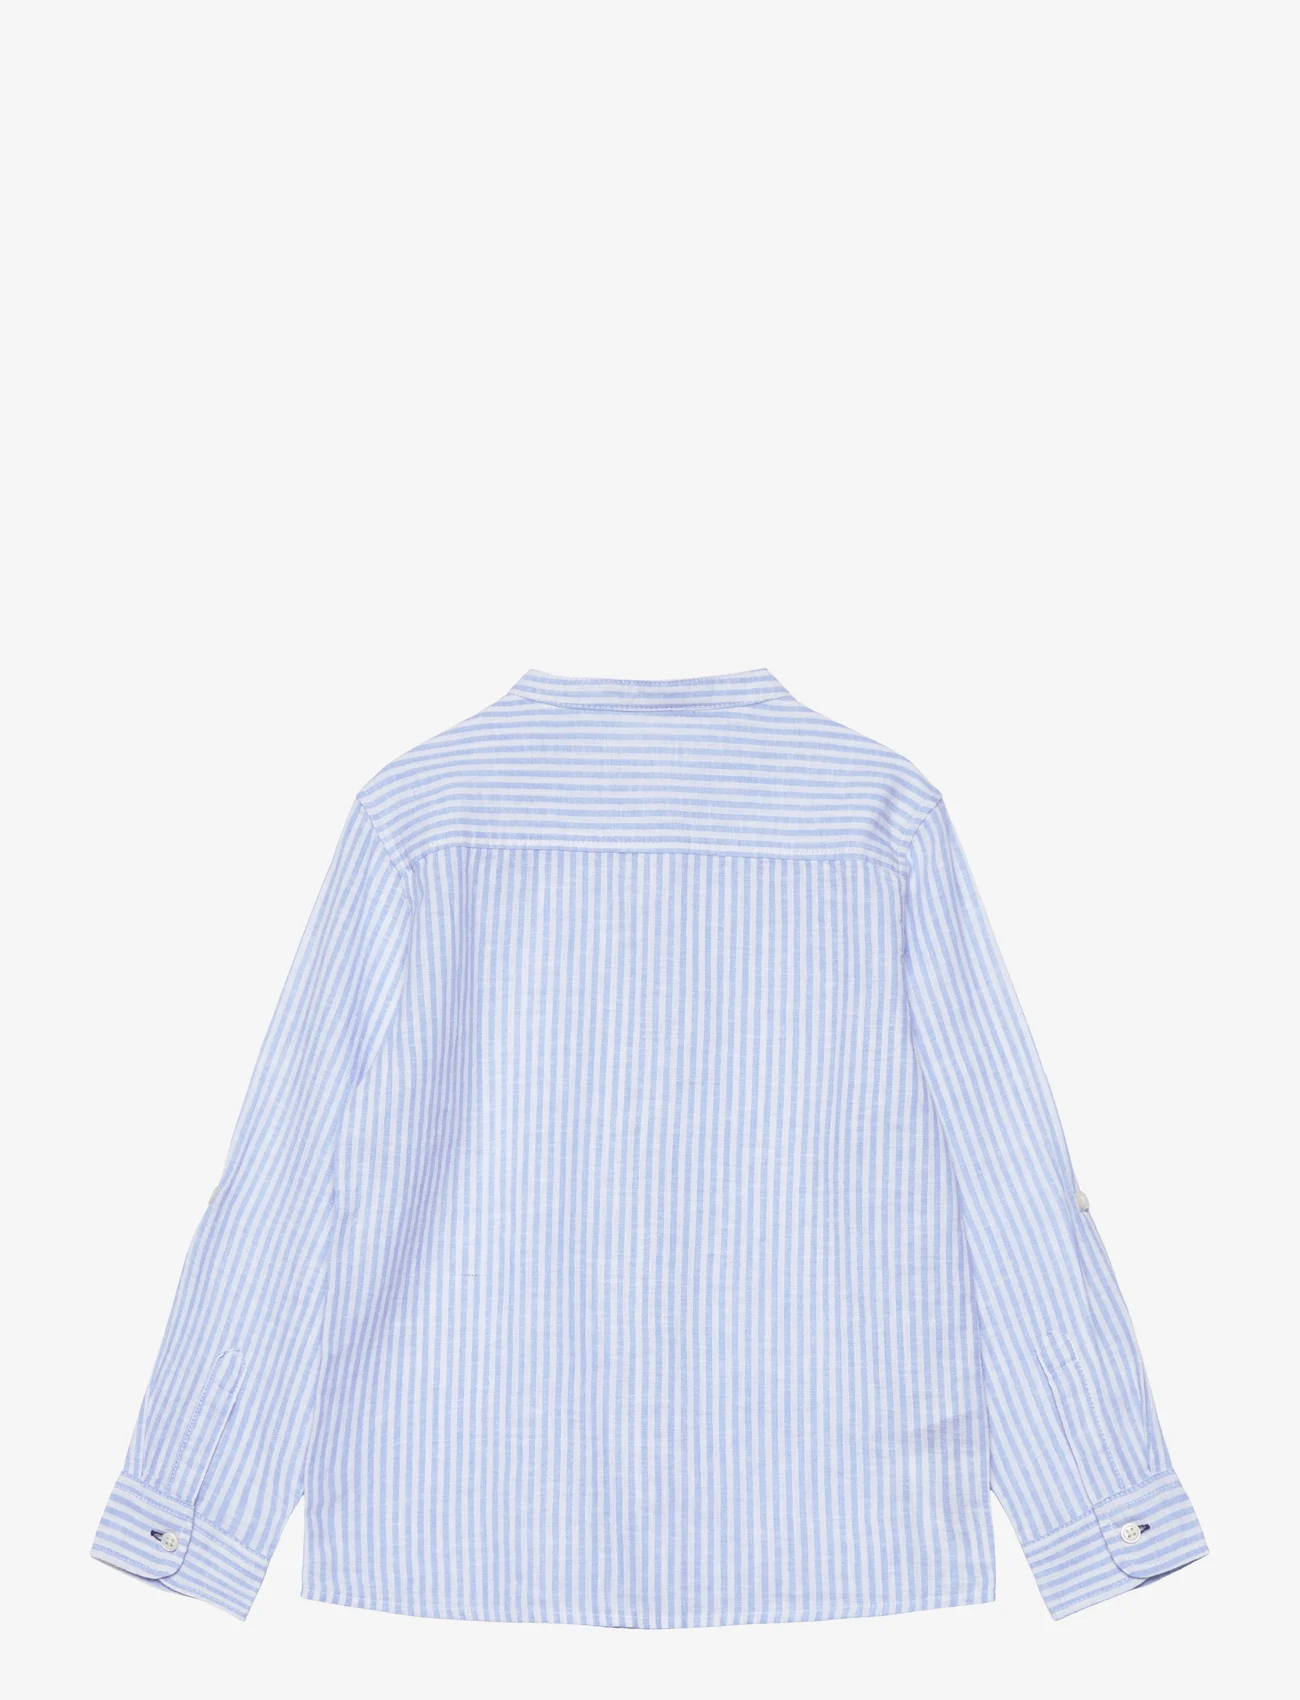 Mango - Striped mandarin-collar linen shirt - långärmade skjortor - lt-pastel blue - 1